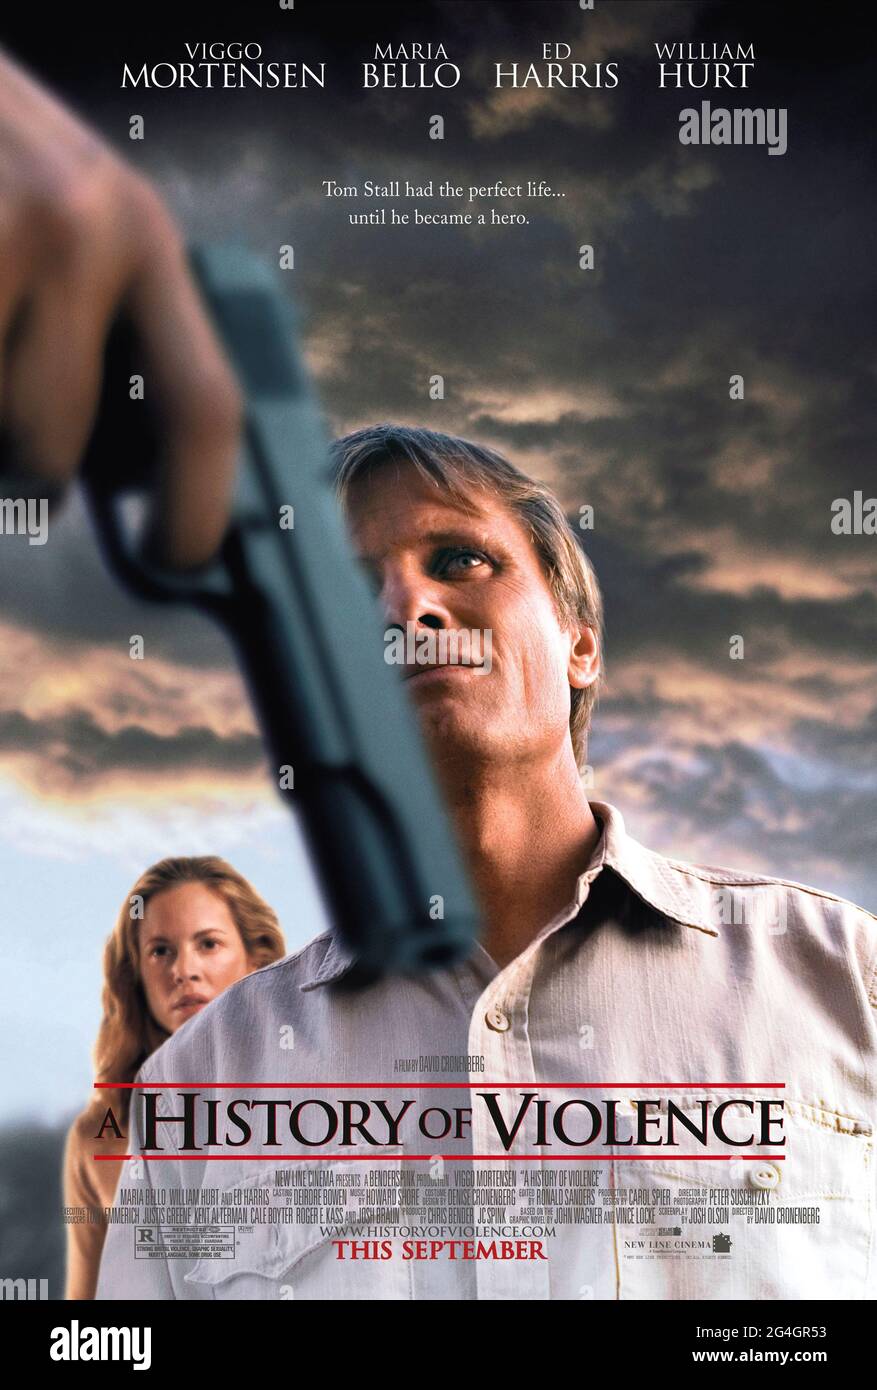 A History of Violence (2005) unter der Regie von David Cronenberg mit Viggo Mortensen, Maria Bello und Ed Harris. Adaption von John Wagner und Vince Locke's Graphic Novel über einen Familienmenschen, der zum Lokalmatador wird und unerwünschte Aufmerksamkeit erregt. Stockfoto